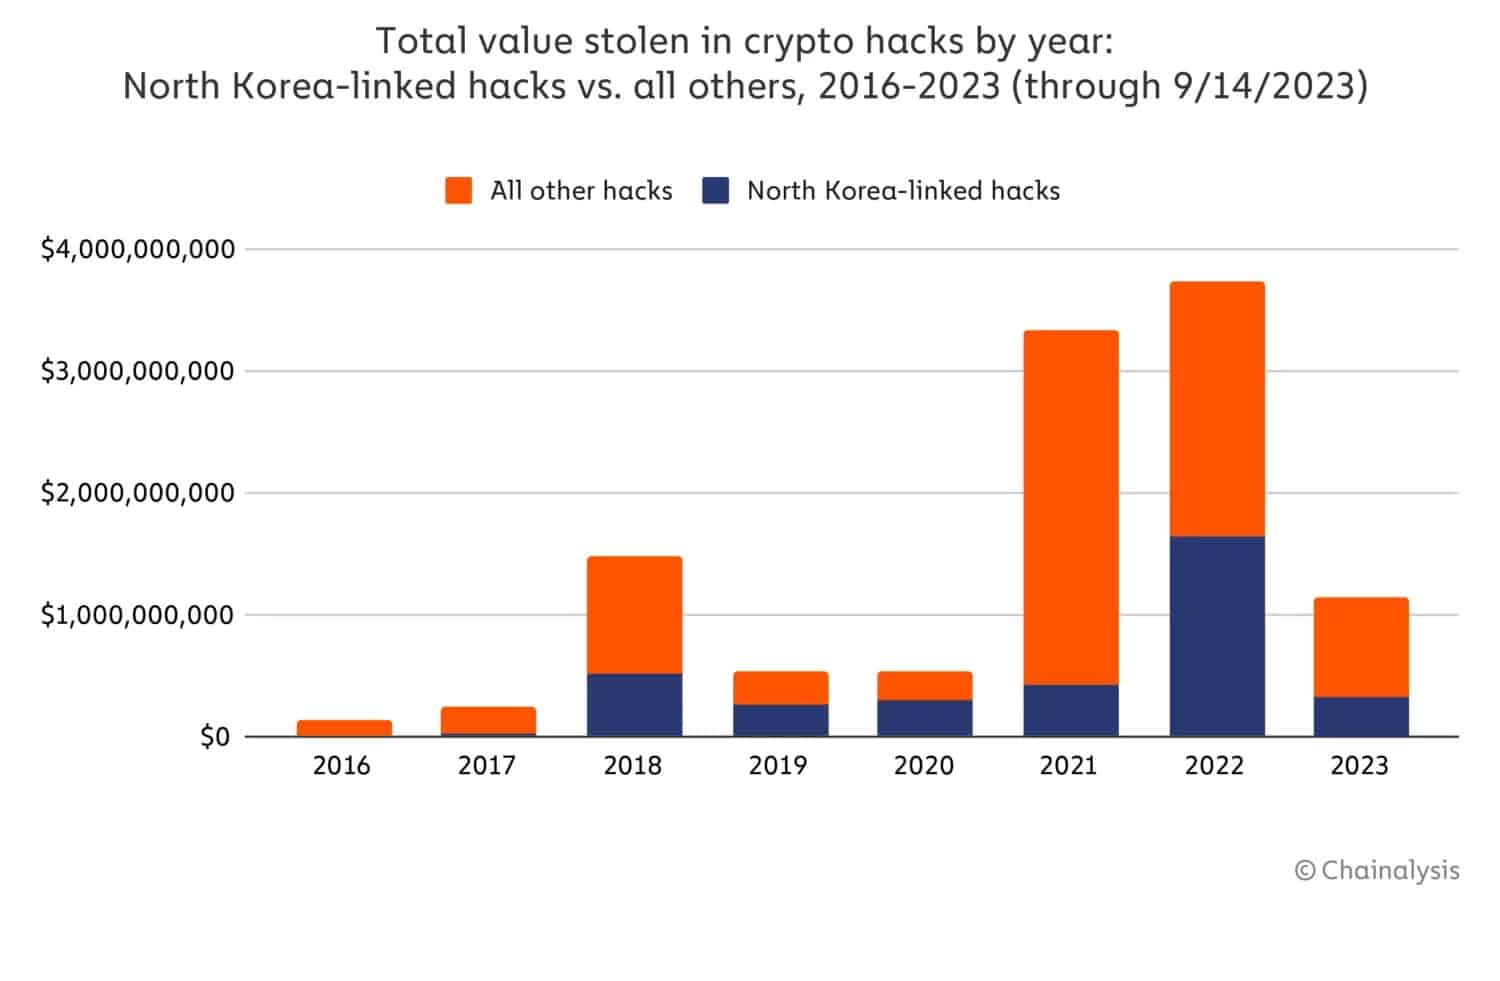 Figura 2 - Comparación entre todos los hackeos de criptomonedas y los de Corea del Norte